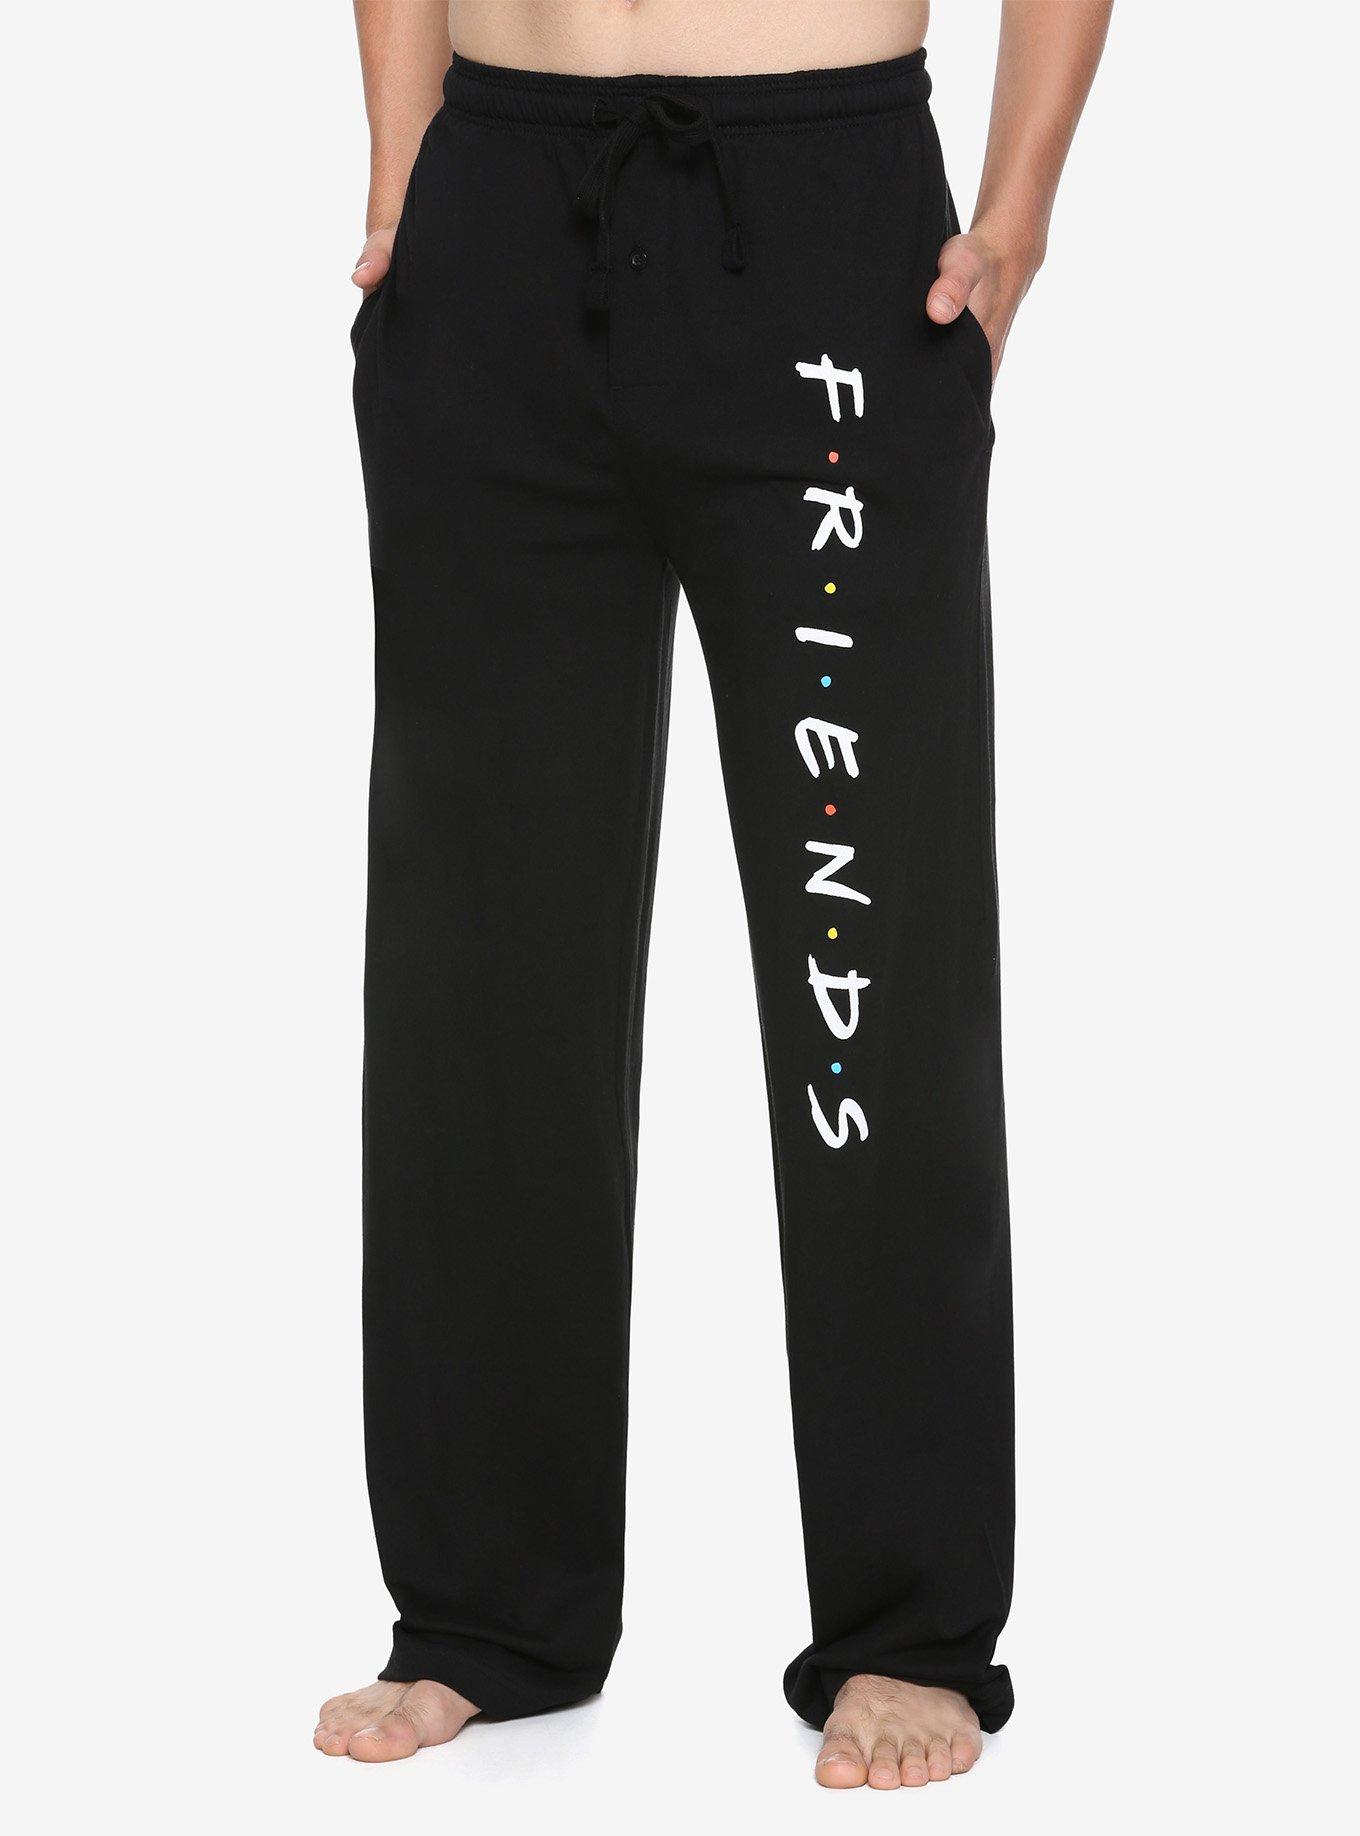 FRIENDS Logo Guys Pajama Pants, BLACK, hi-res